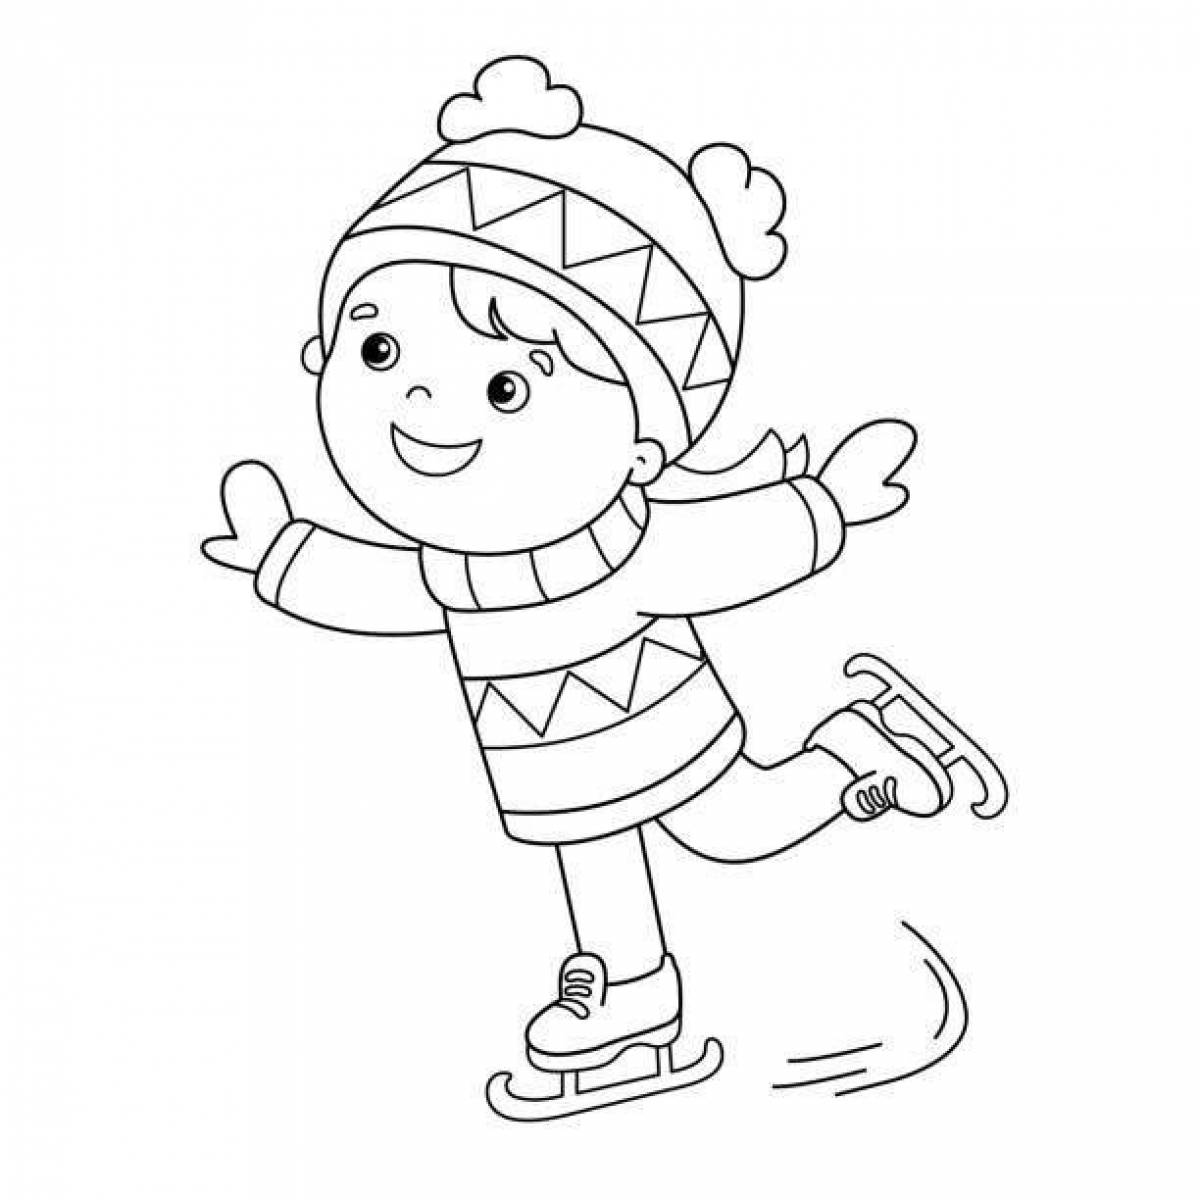 Дети на коньках раскраска для детей